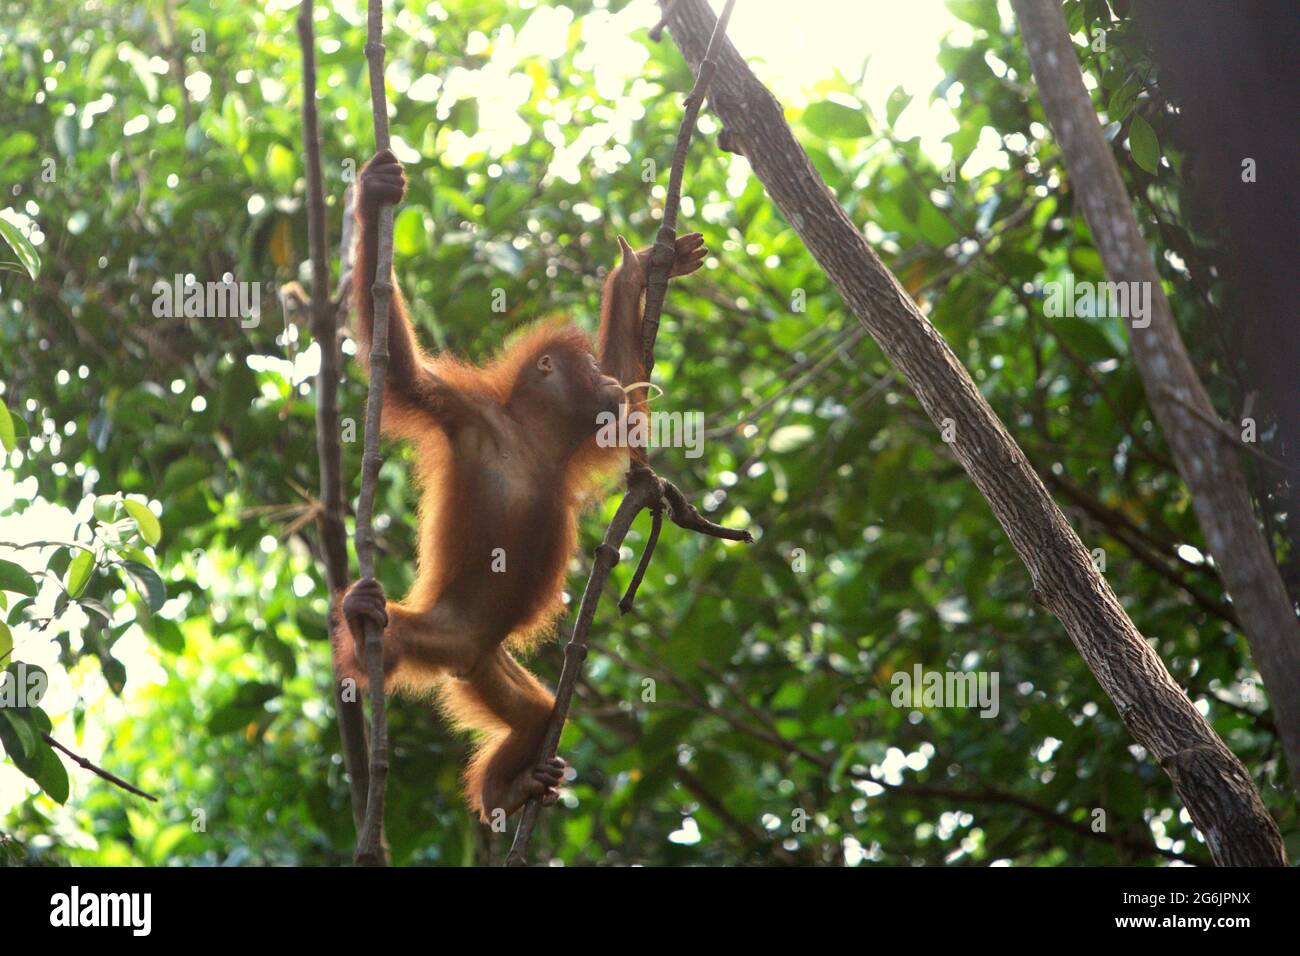 Young orangutan at Rasa Ria Nature Reserve, Kota Kinabalu, Sabah, Malaysia. Stock Photo